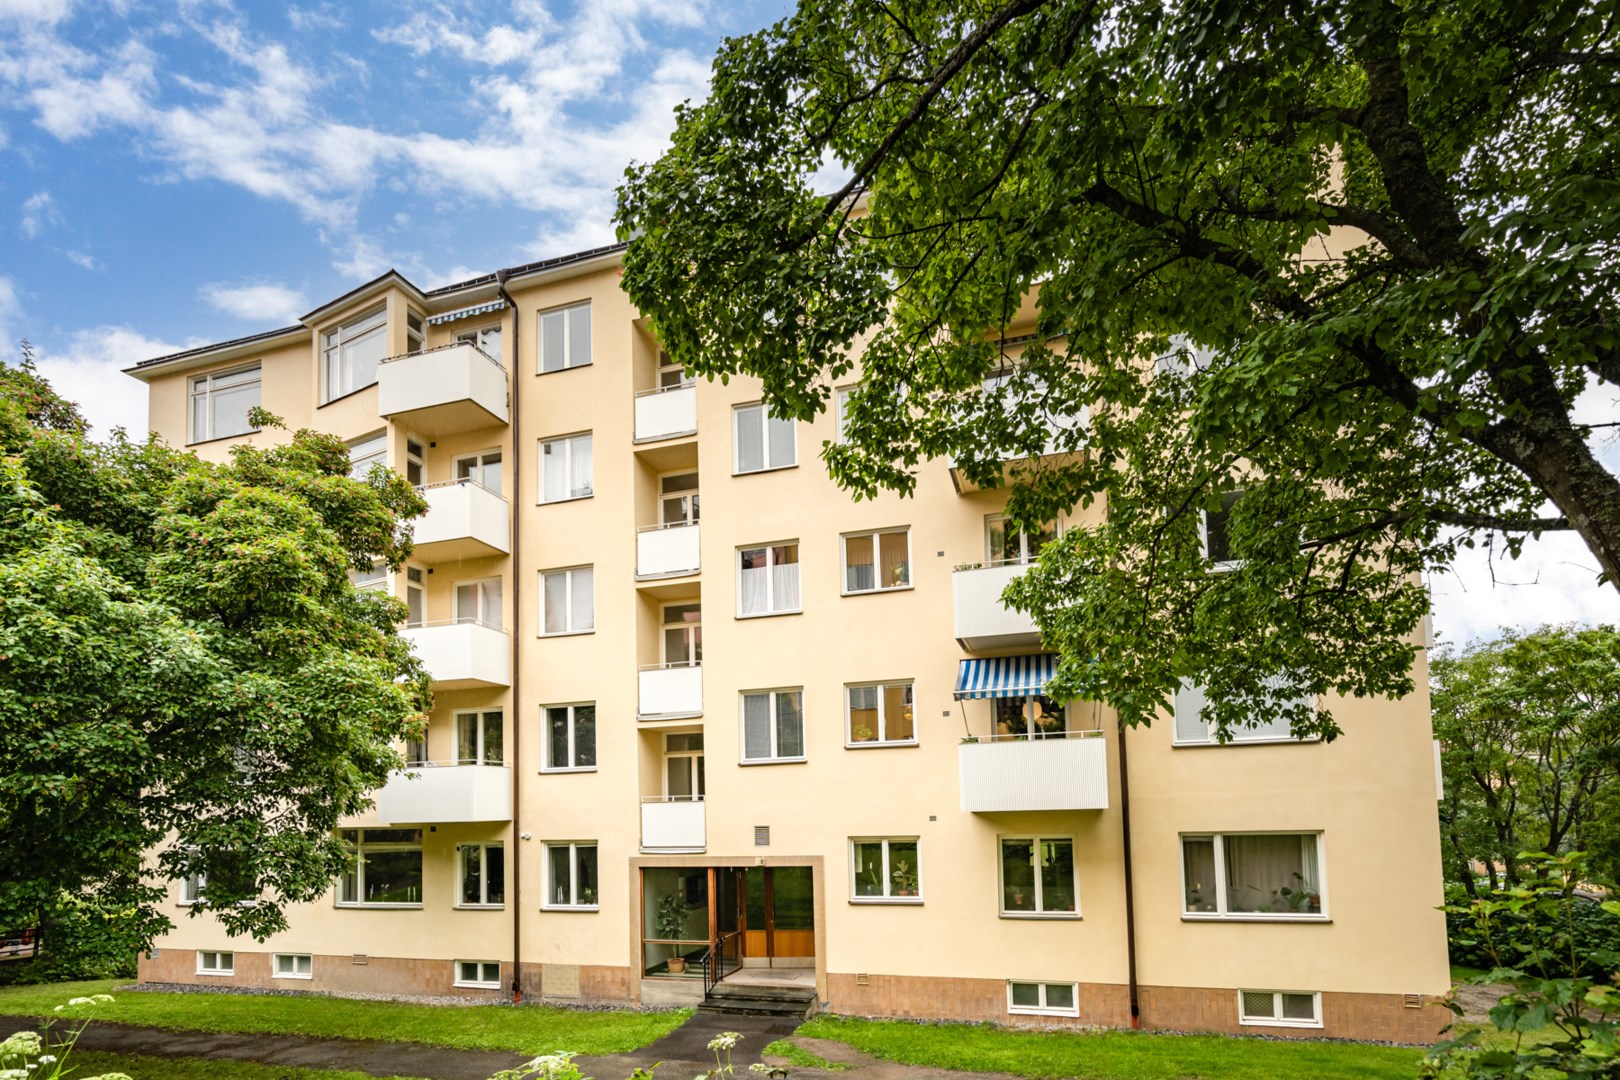 Bostadsrätt i Råsunda, Solna, Sverige, Erik Sandbergs Gata 8